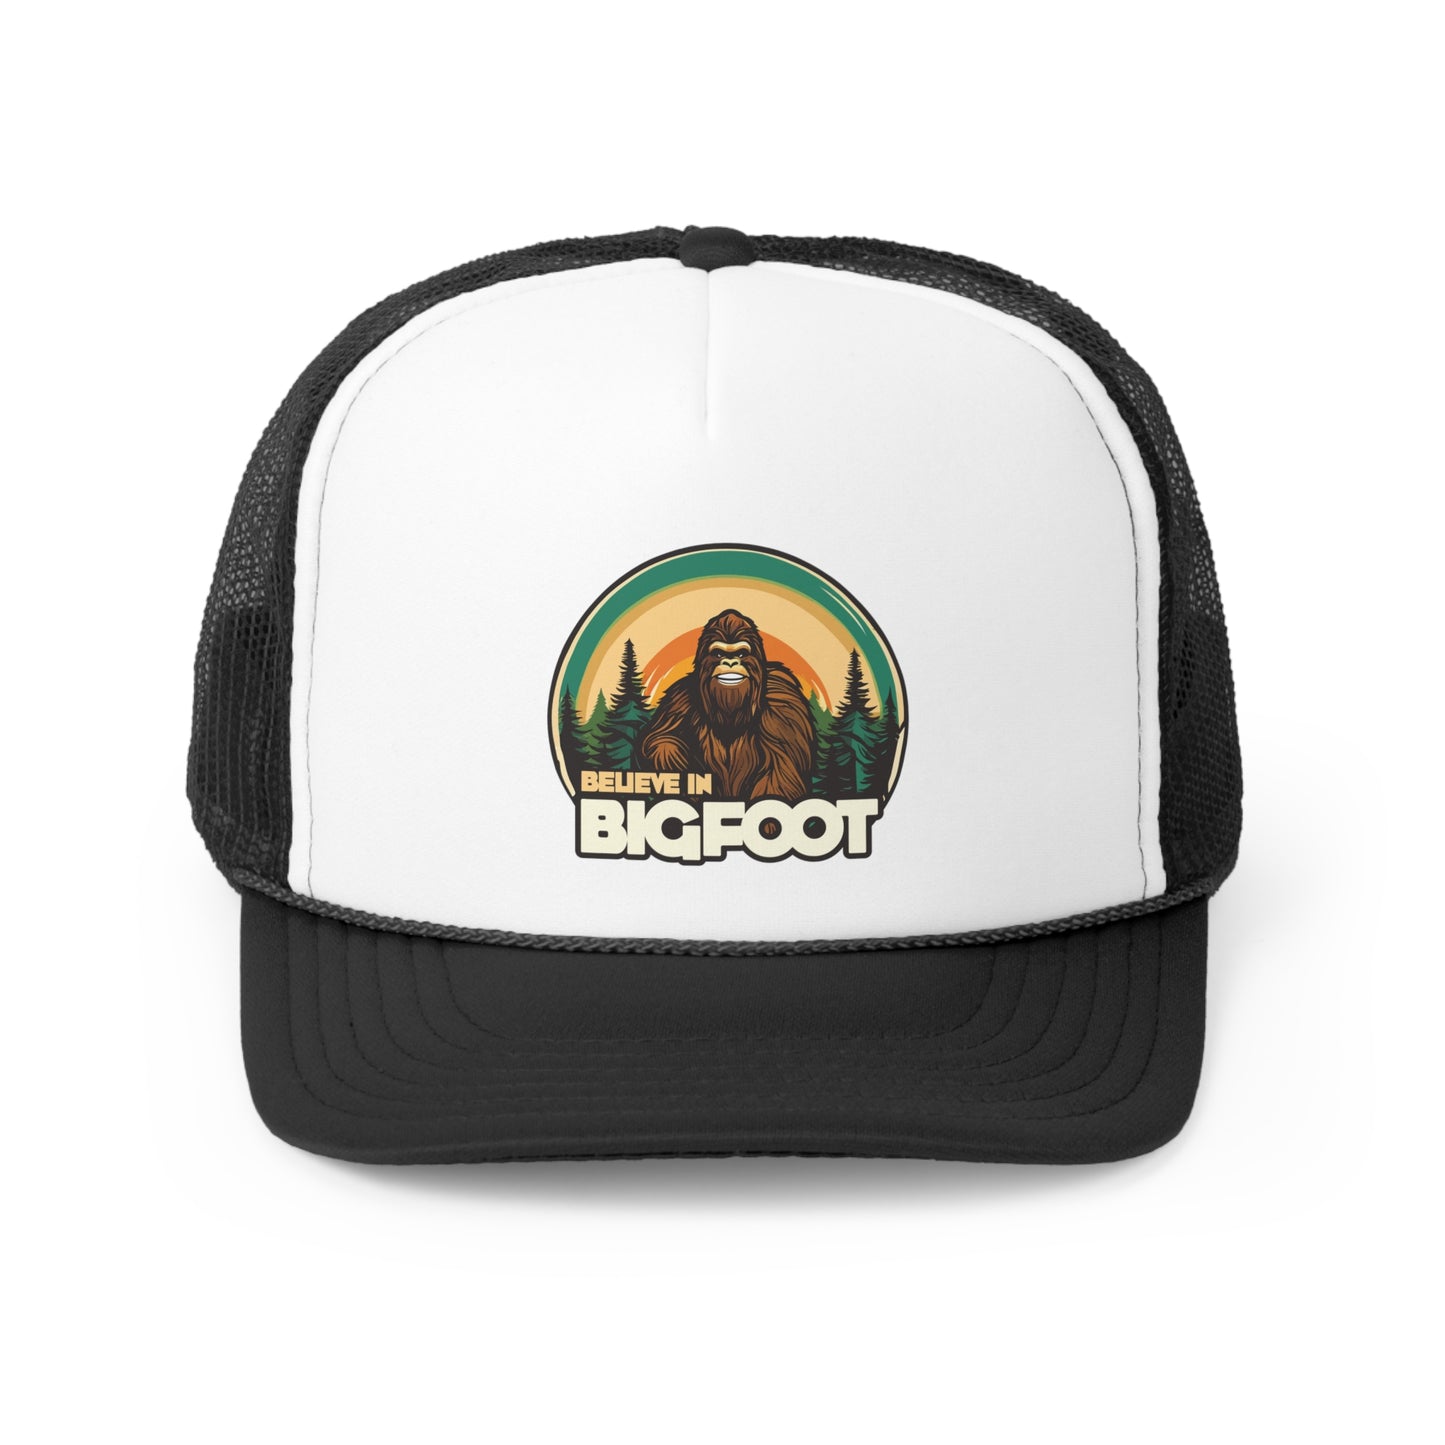 Bigfoot Believer Trucker Caps